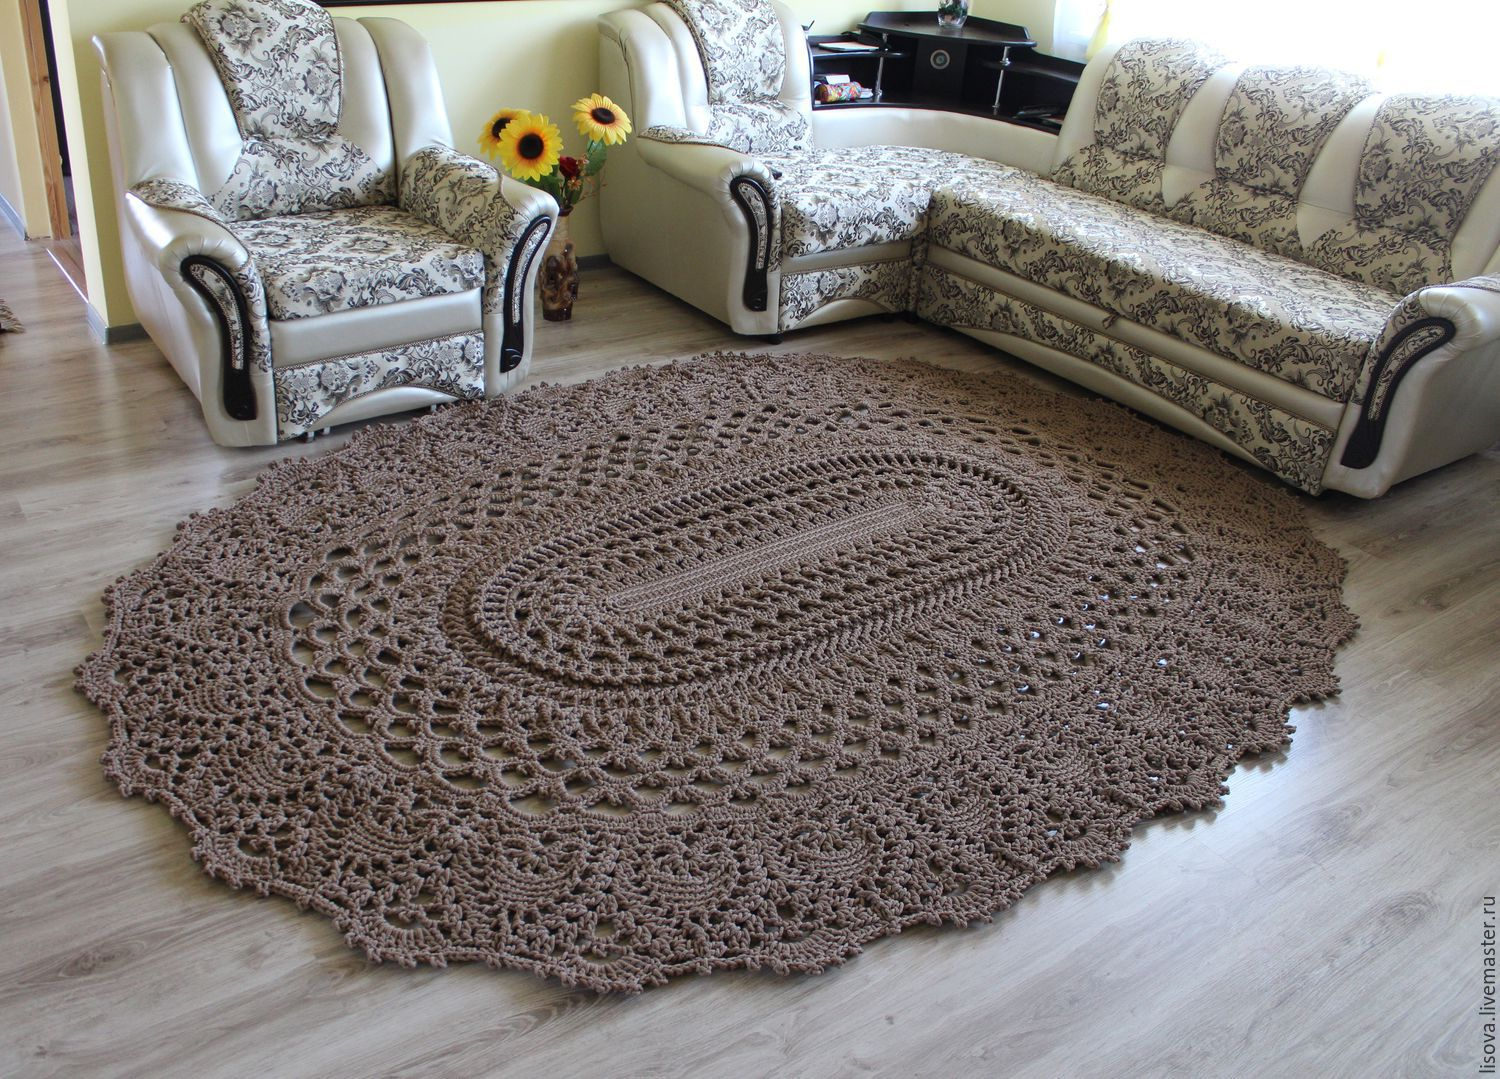 3 Motifs of Easy Crochet Oval Rug Pattern Free Crochet Pattern For A Large Oval Rug Crochet Kingdom